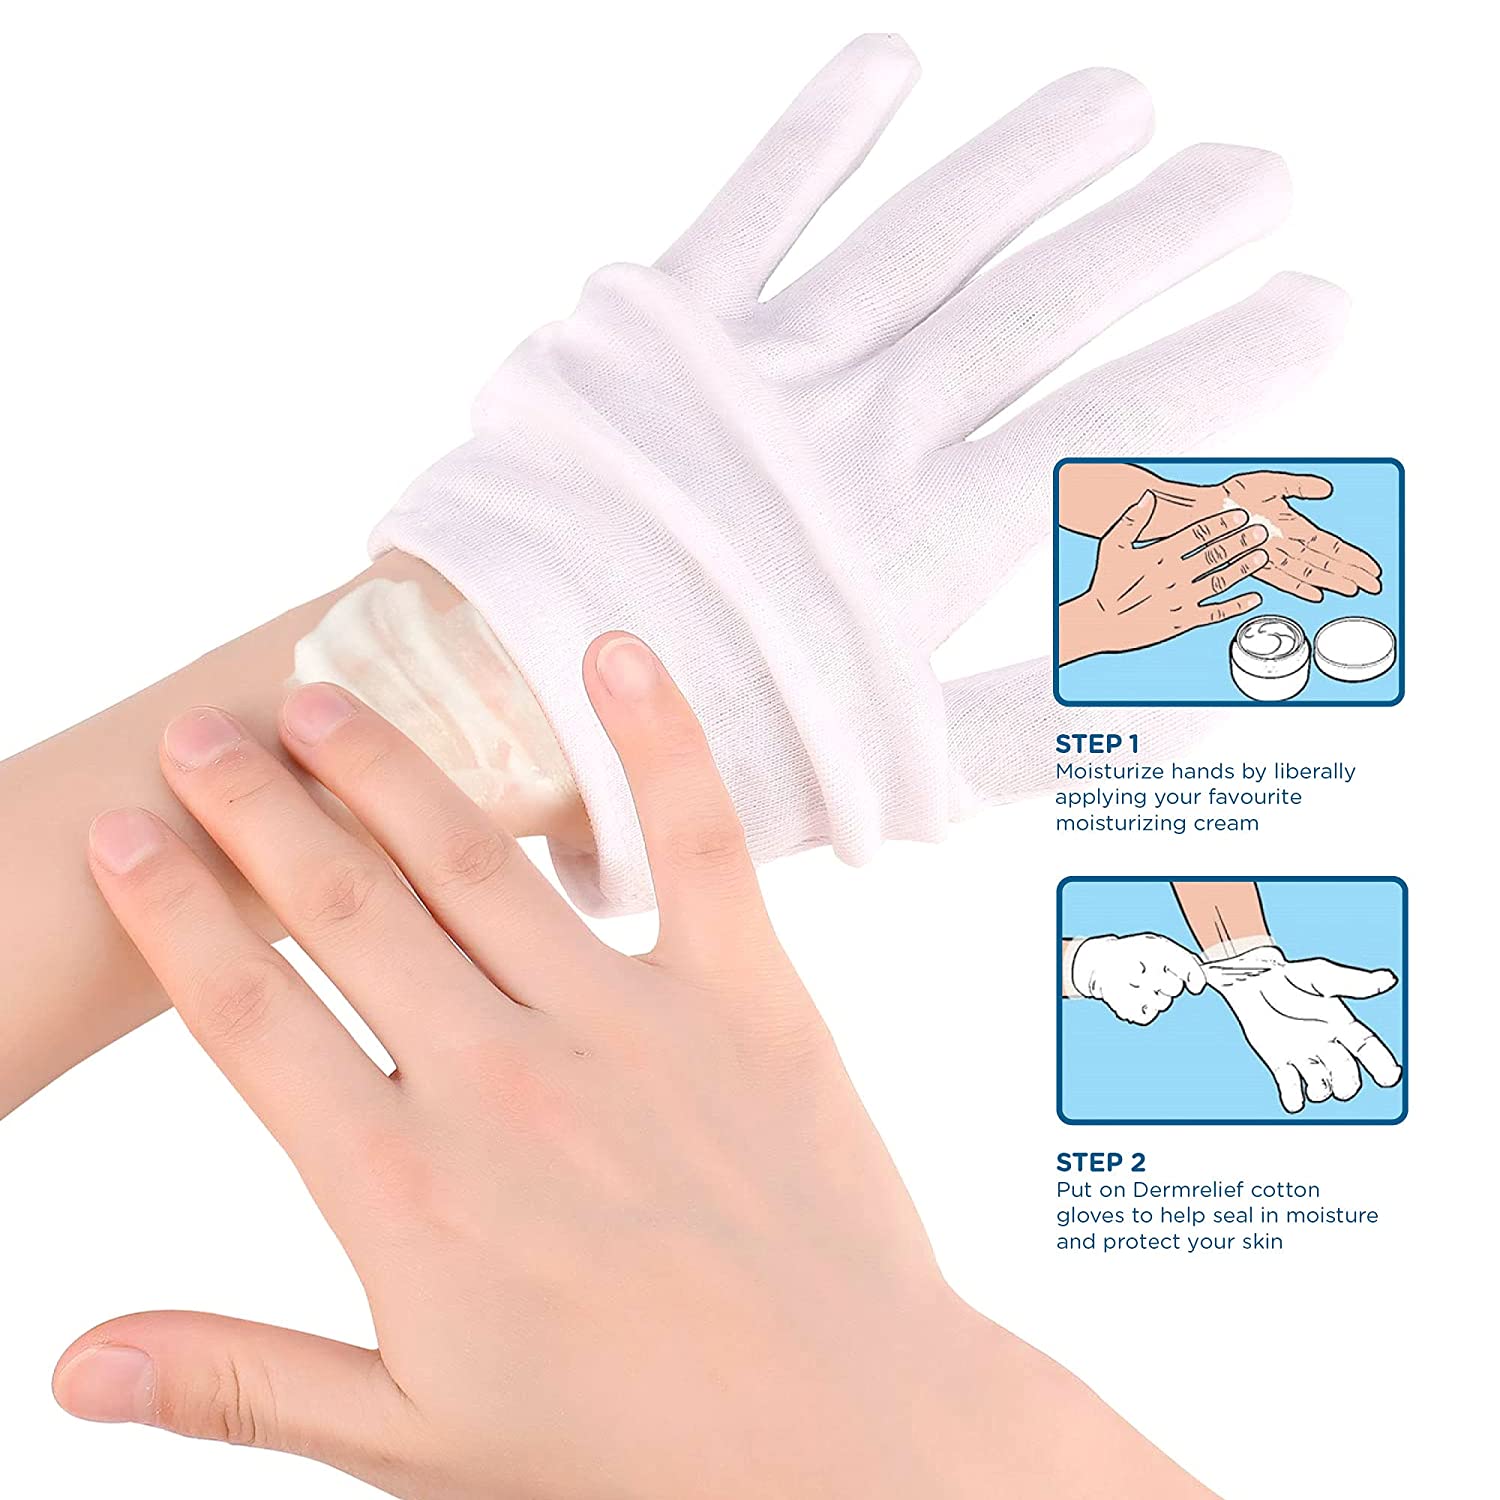 Do cotton gloves help dry skin?